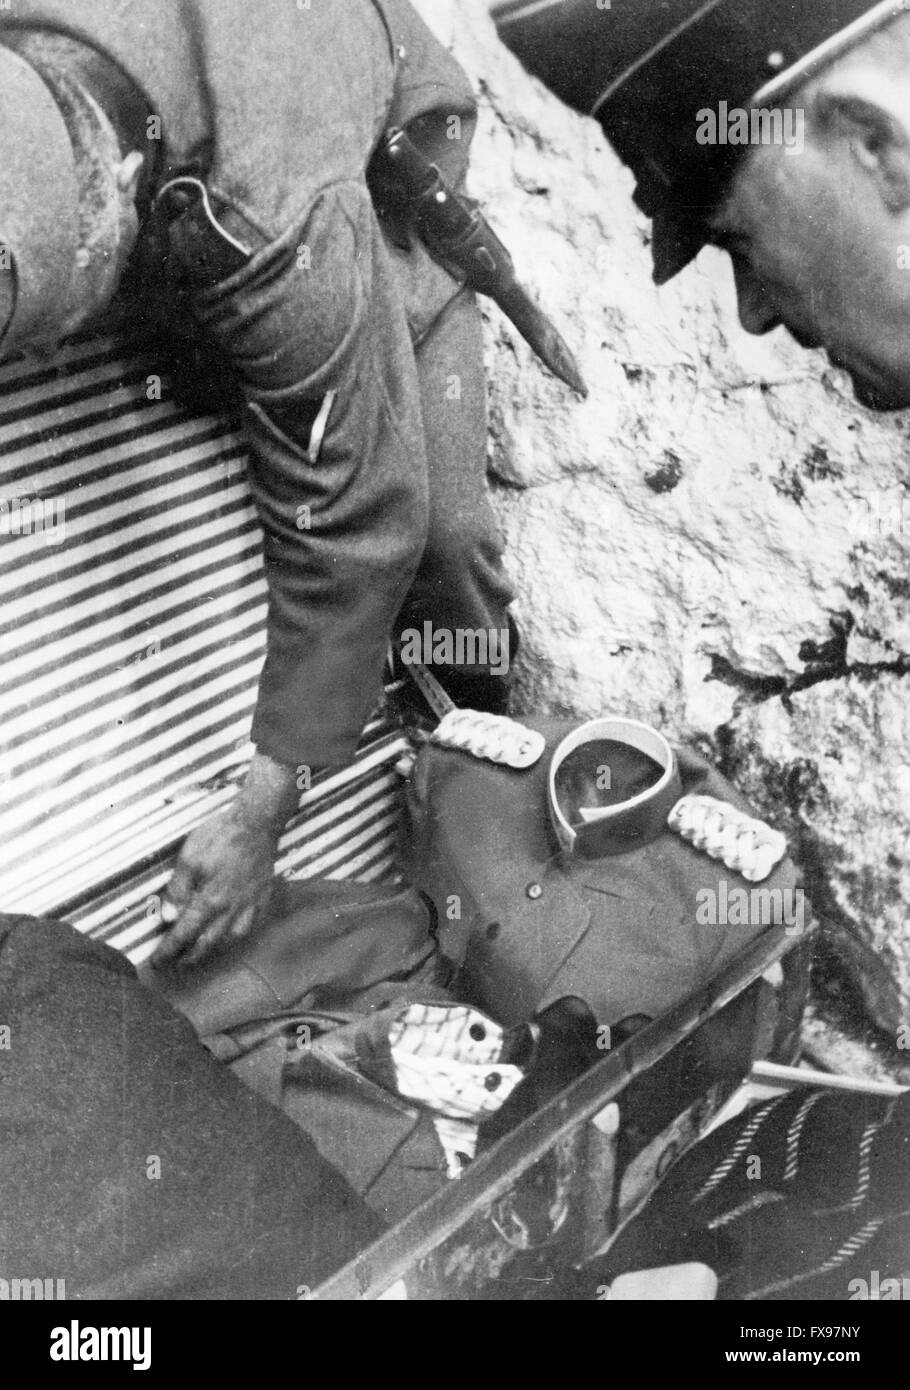 L'immagine della propaganda nazista raffigura i membri della Wehrmacht tedesca con un'uniforme dell'ultimo re di Jugoslavia Pietro II di Jugoslavia. La foto è stata scattata dopo la sua fuga dopo la resa della Jugoslavia nell'aprile 1941. Fotoarchiv für Zeitgeschichtee - SENZA FILI - Foto Stock